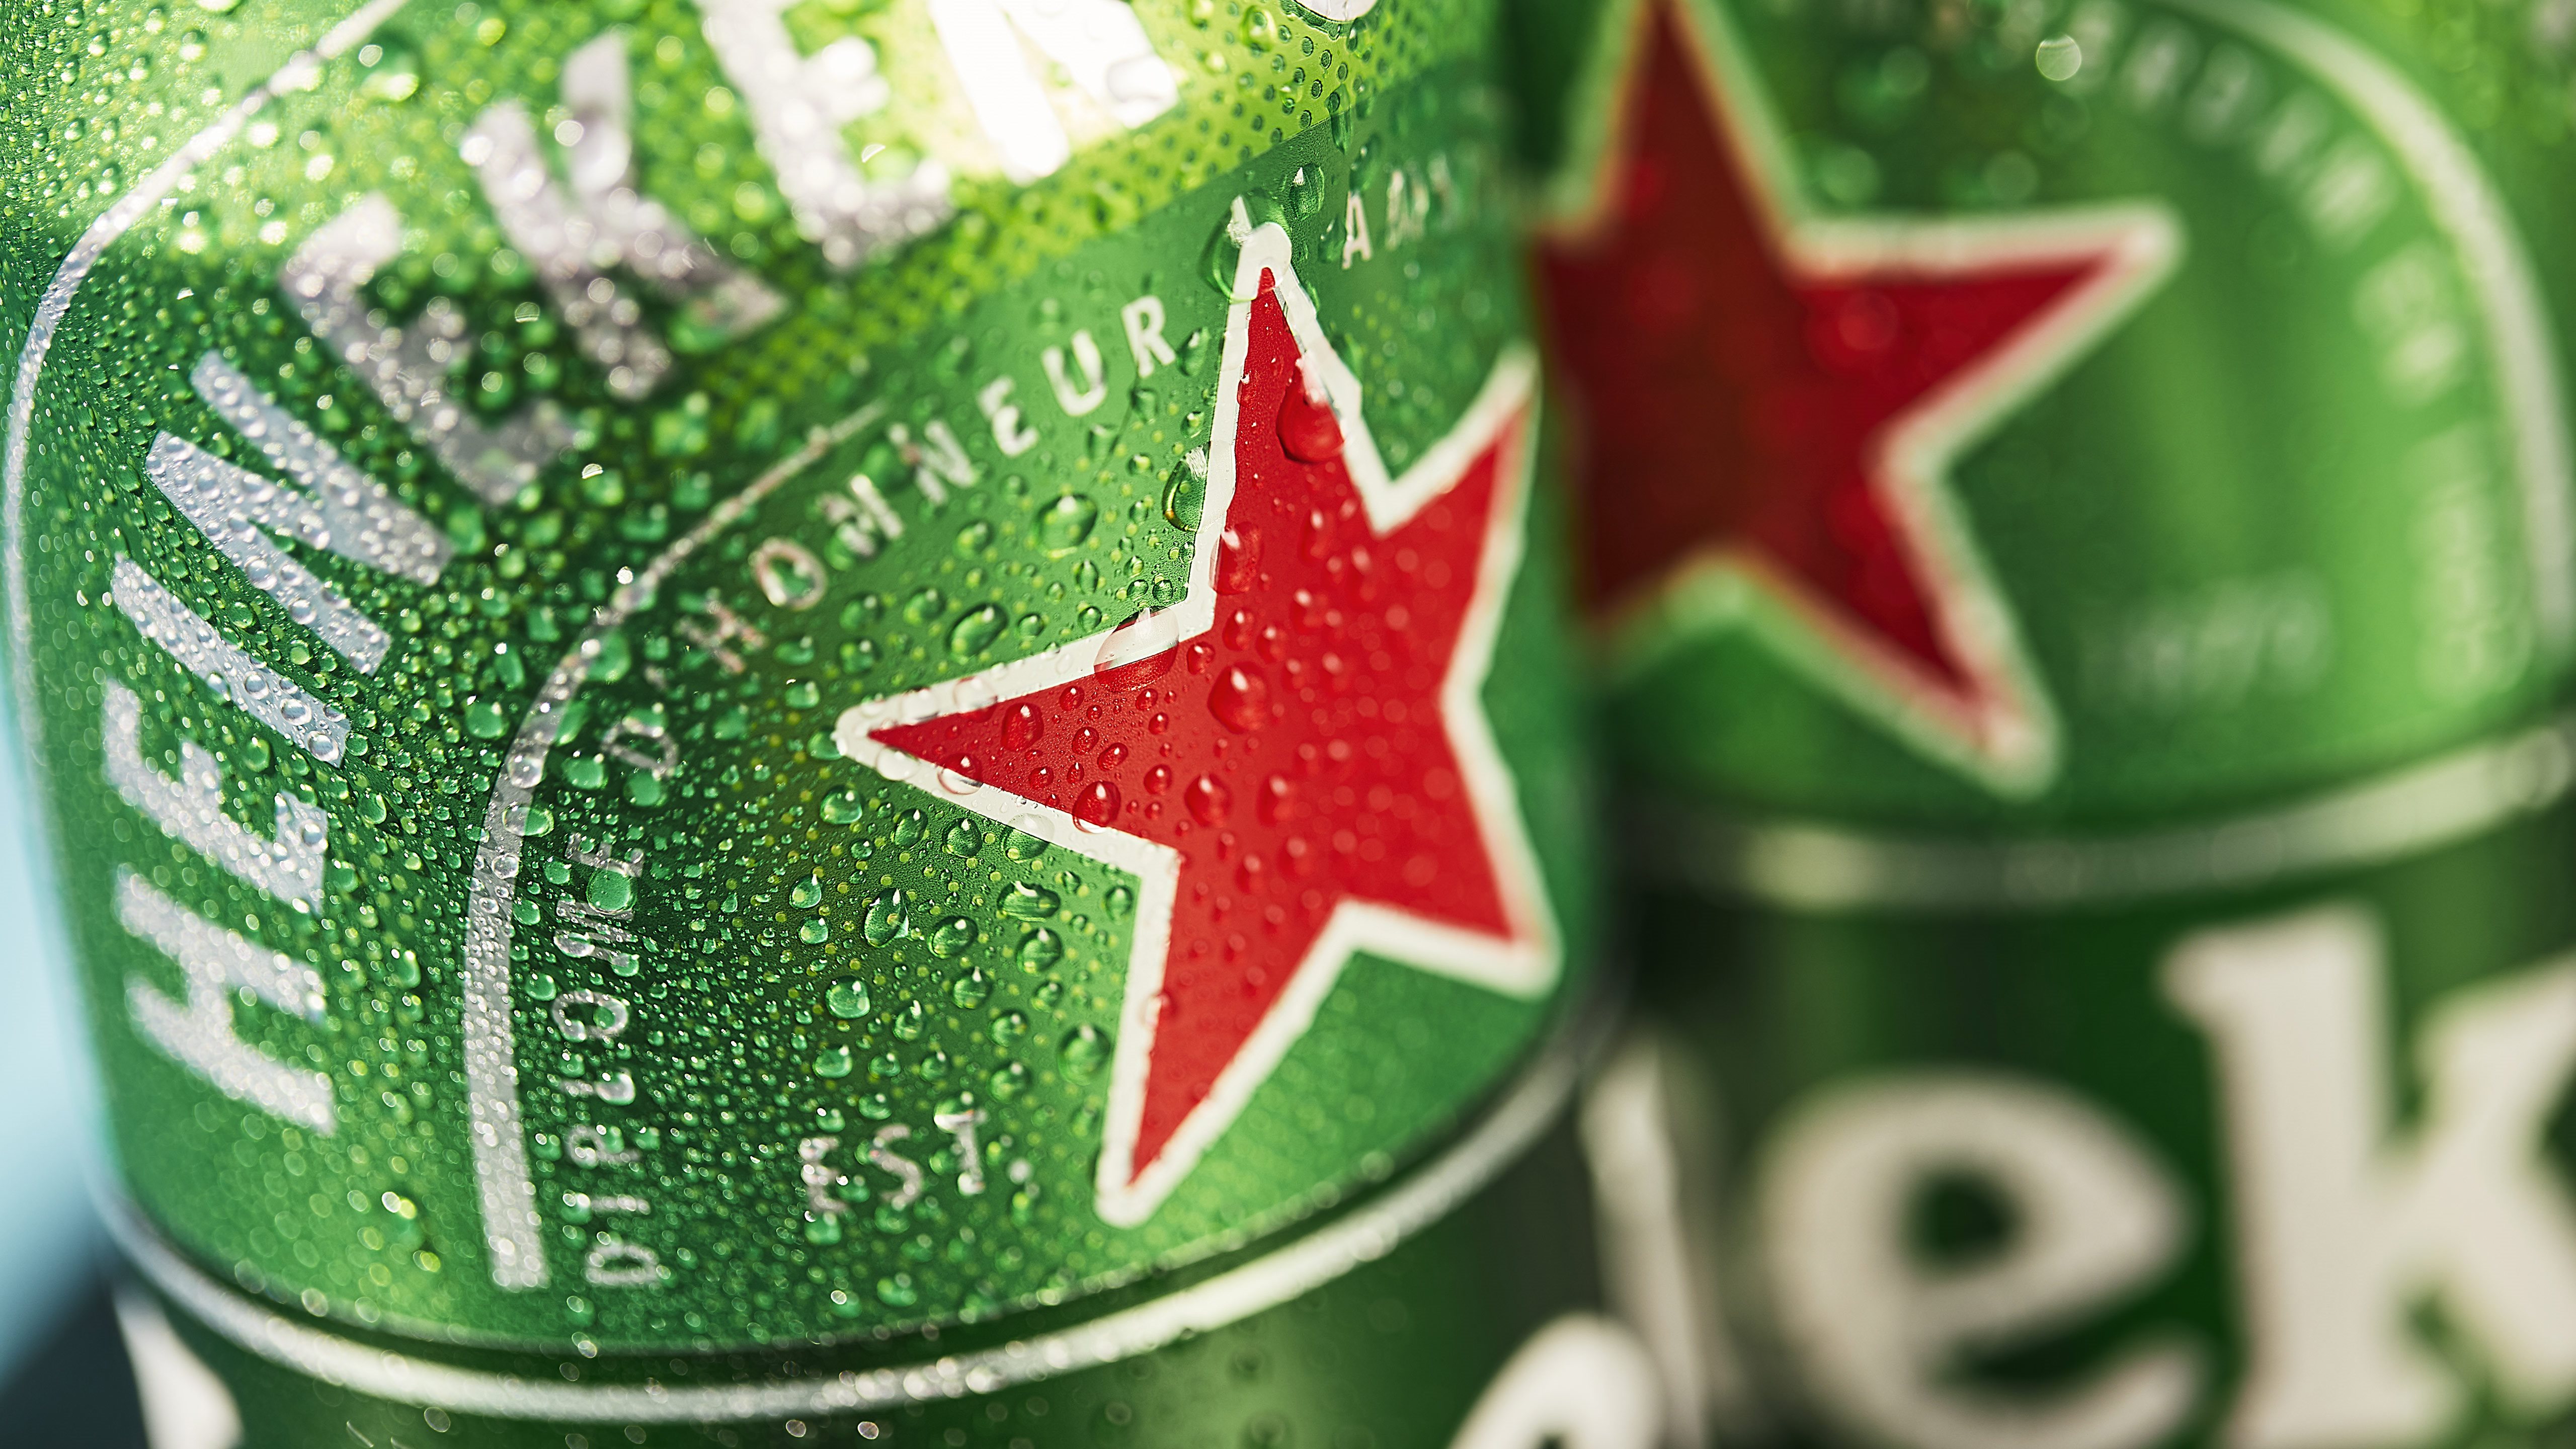 Heineken beer cans